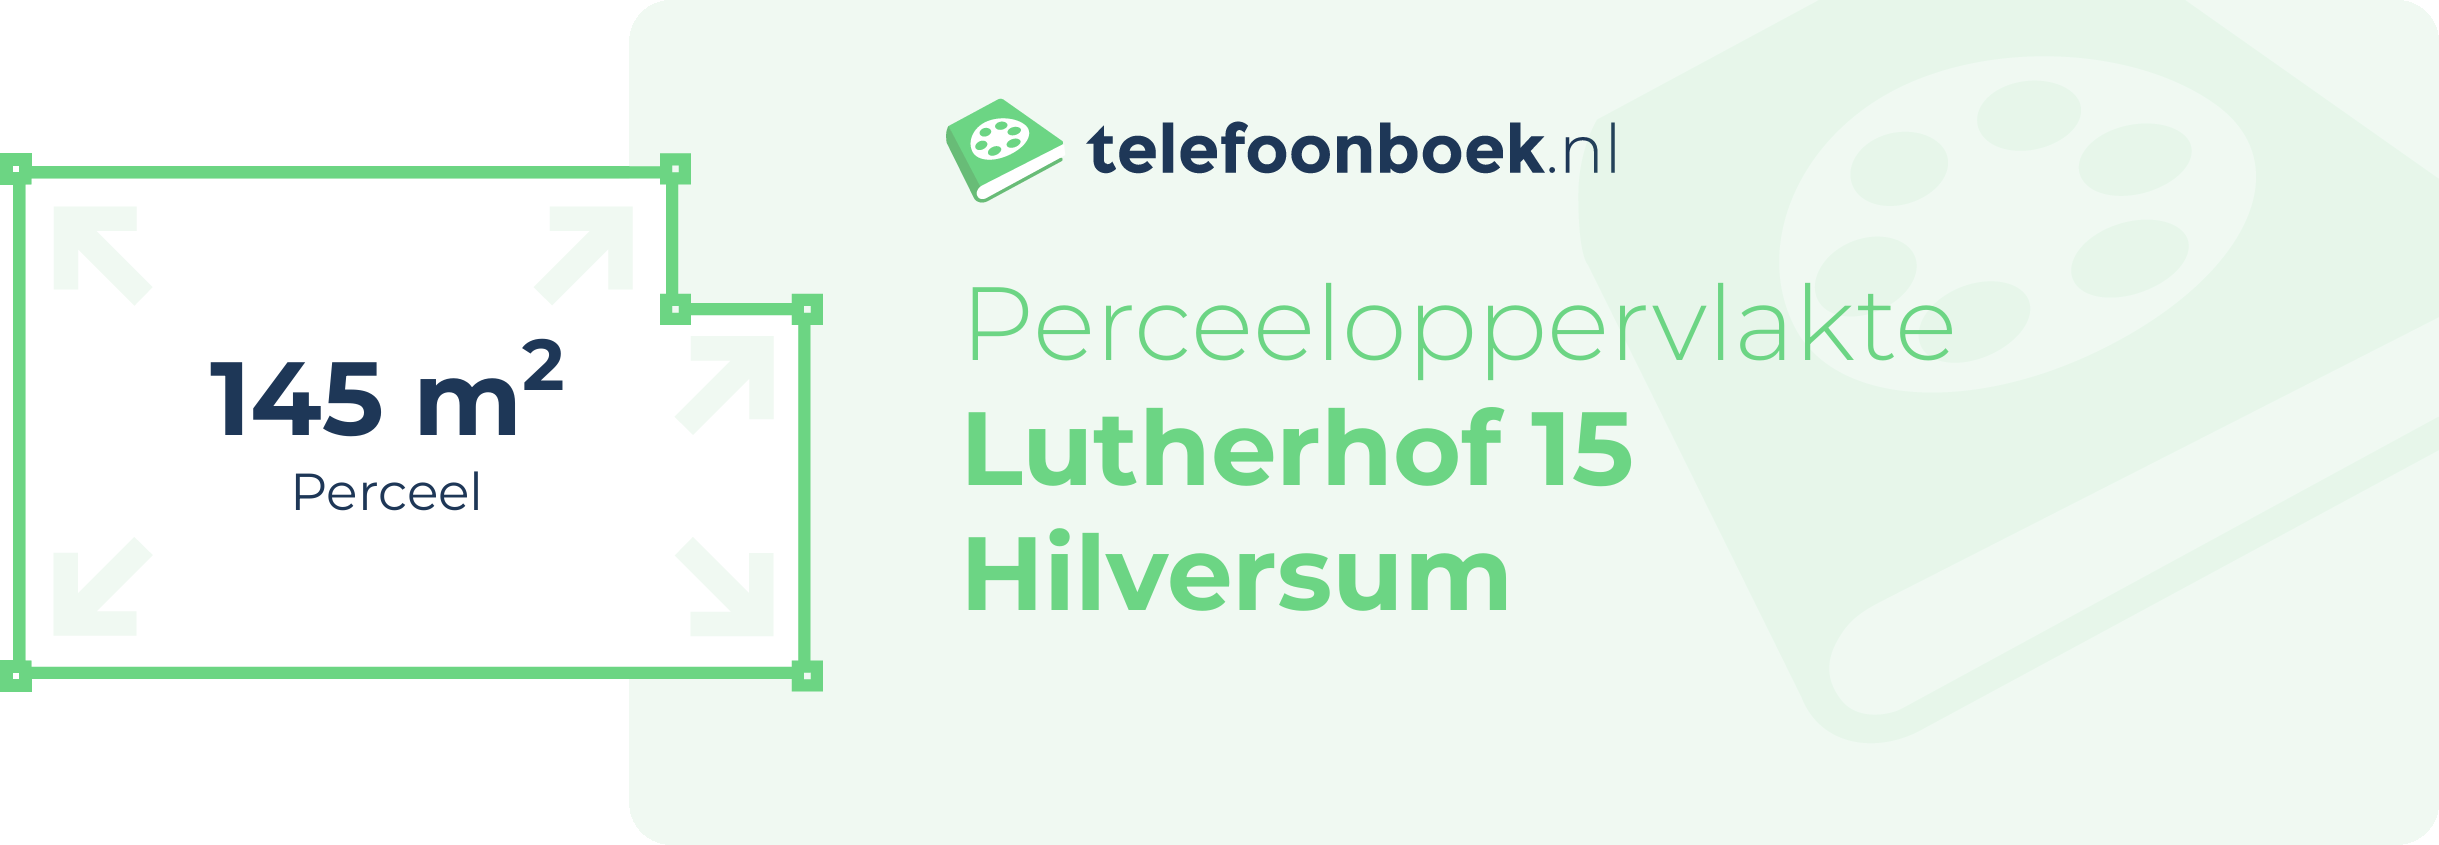 Perceeloppervlakte Lutherhof 15 Hilversum